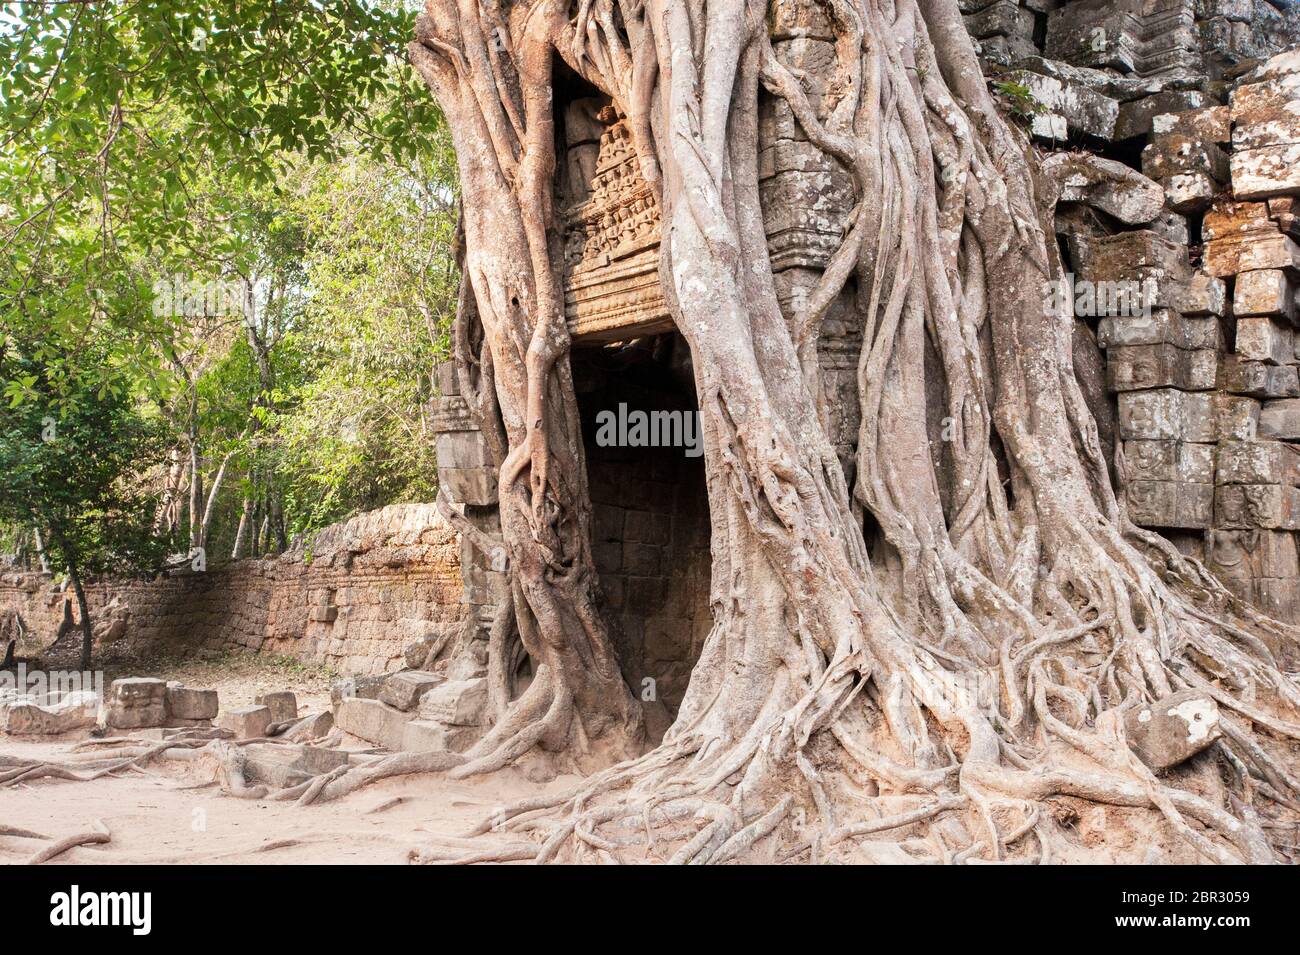 Les racines d'un arbre de Fig de Stronger couvrent la tour d'entrée du Temple Ta Som. Angkor, site du patrimoine mondial de l'UNESCO, province de Siem Reap, Cambodge, Asie du Sud-est Banque D'Images